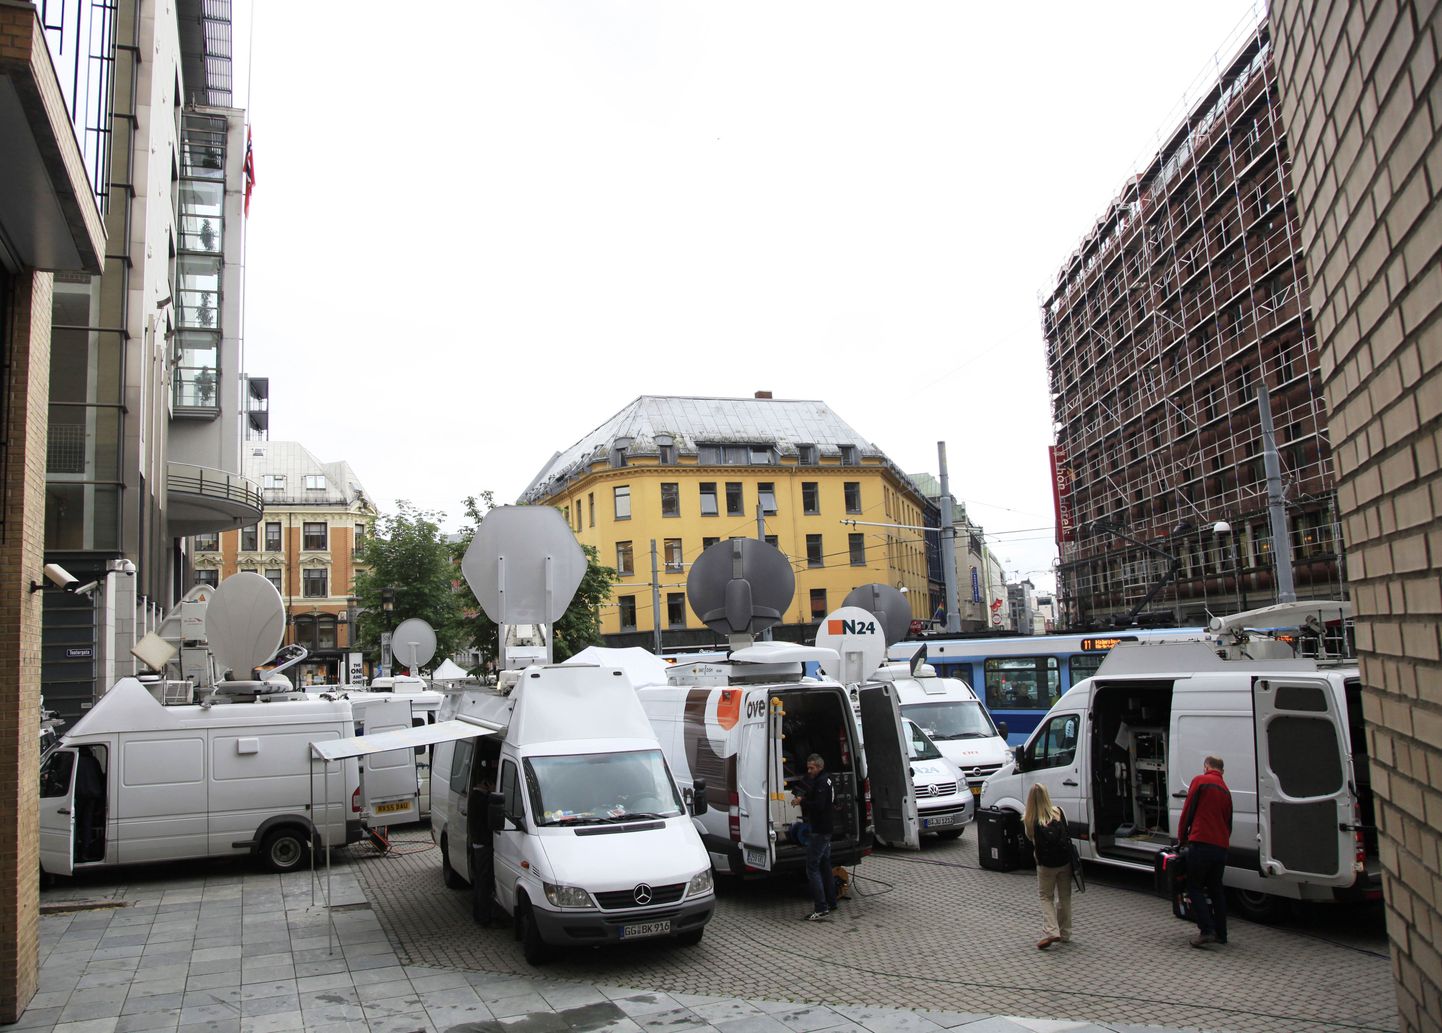 Anders Behring Breiviki kohtusaagat on veretöö julmuse ja ohvrite rohkuse tõttu saatnud meedia terav huvi. Pildil on erinevate meediaväljaannete esindajad Oslo kohtumaja ees.